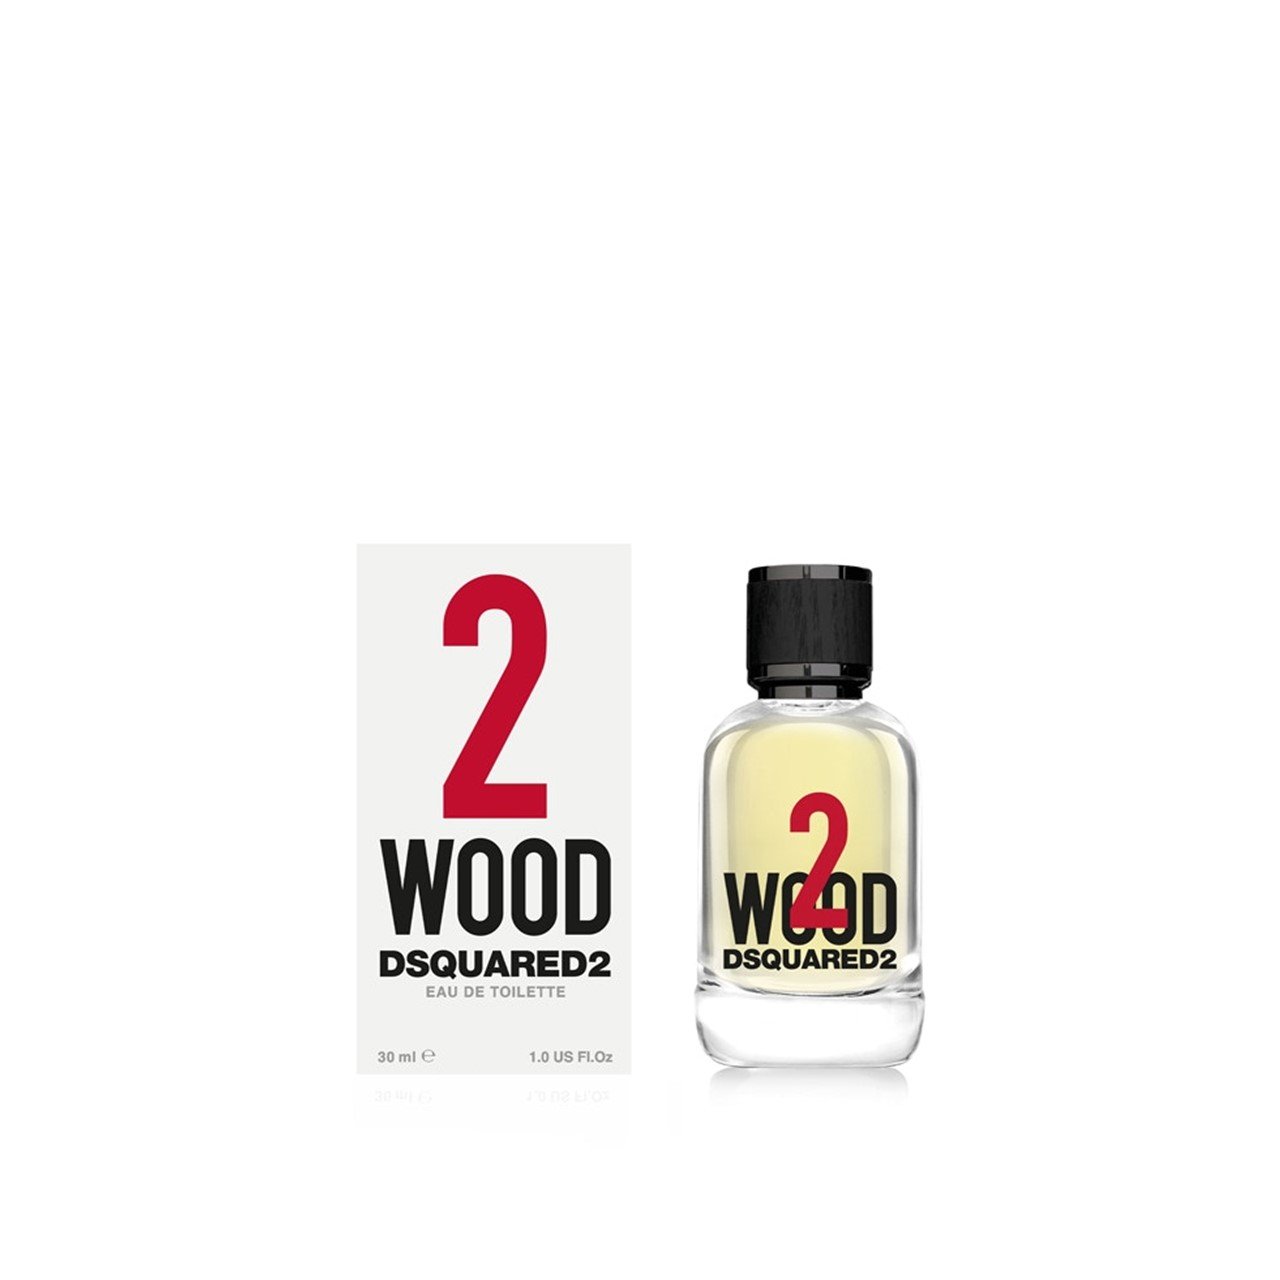 Dsquared2 2 Wood Eau de Toilette 30ml (1.0fl oz)